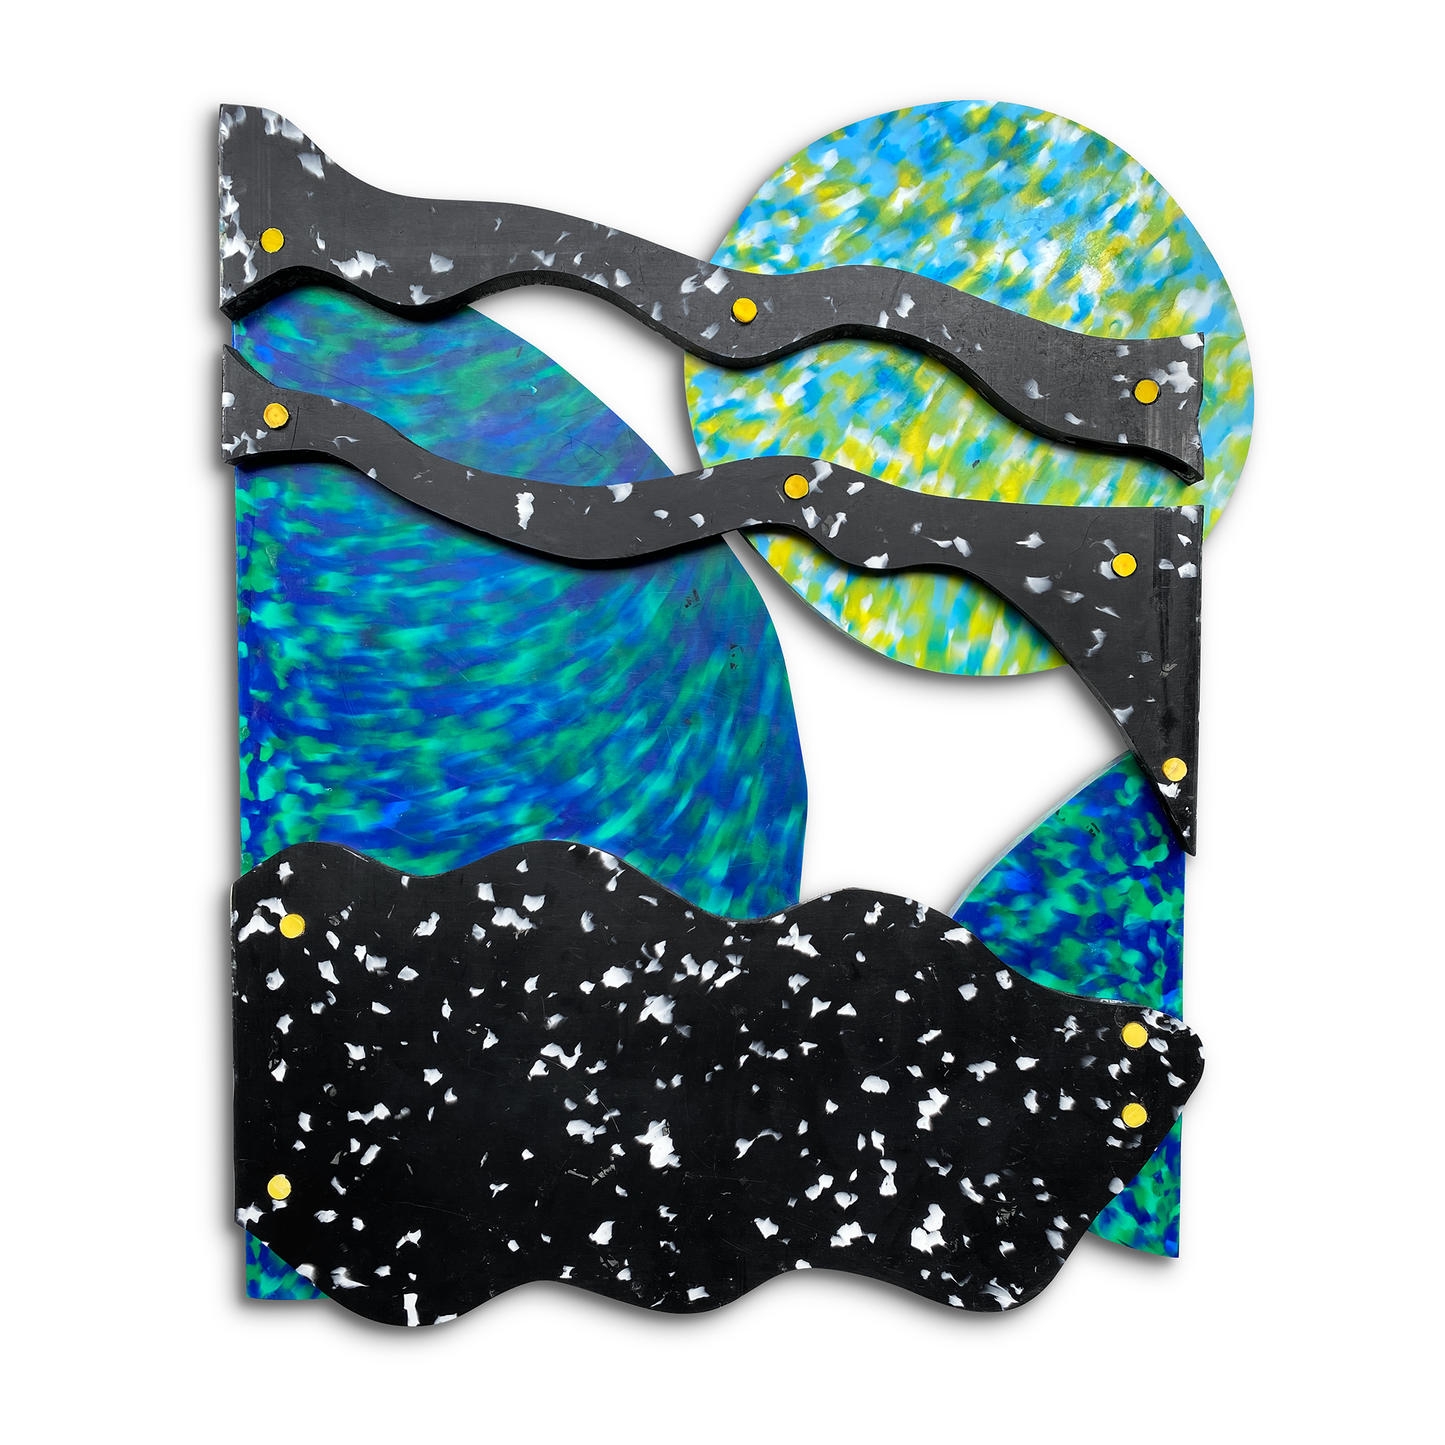 Recycled Art - Ocean Series 'Undercurrent'